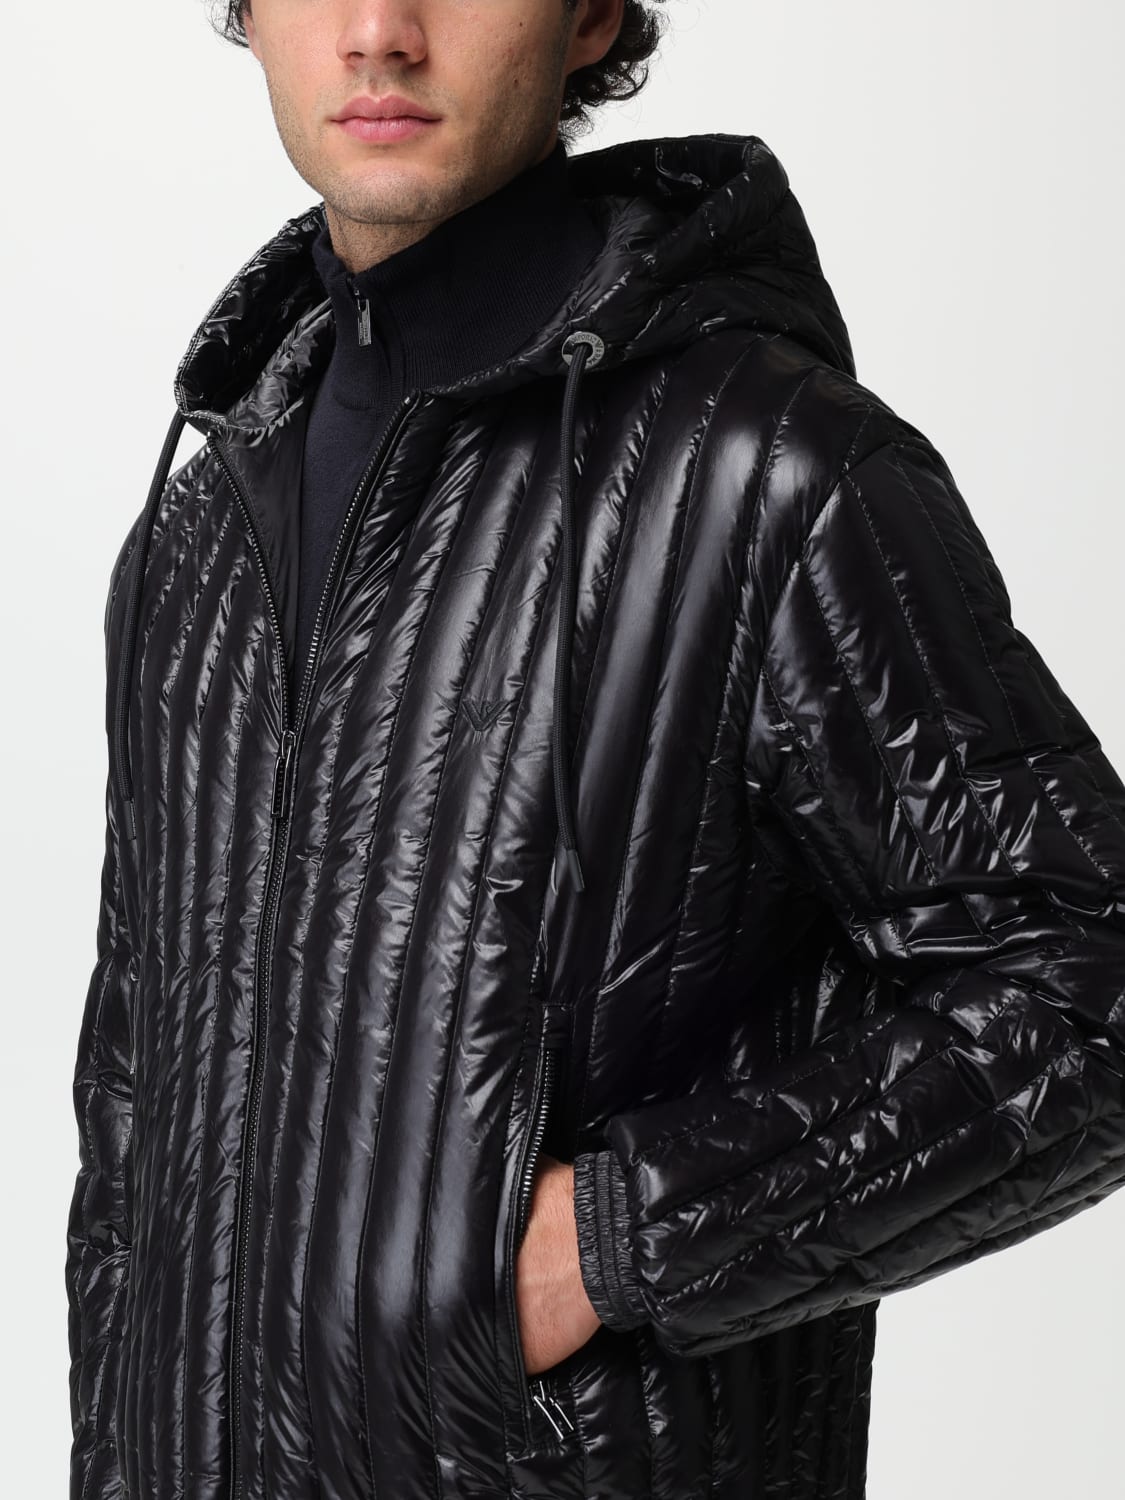 EMPORIO ARMANI: jacket for man - Black | Emporio Armani jacket ...